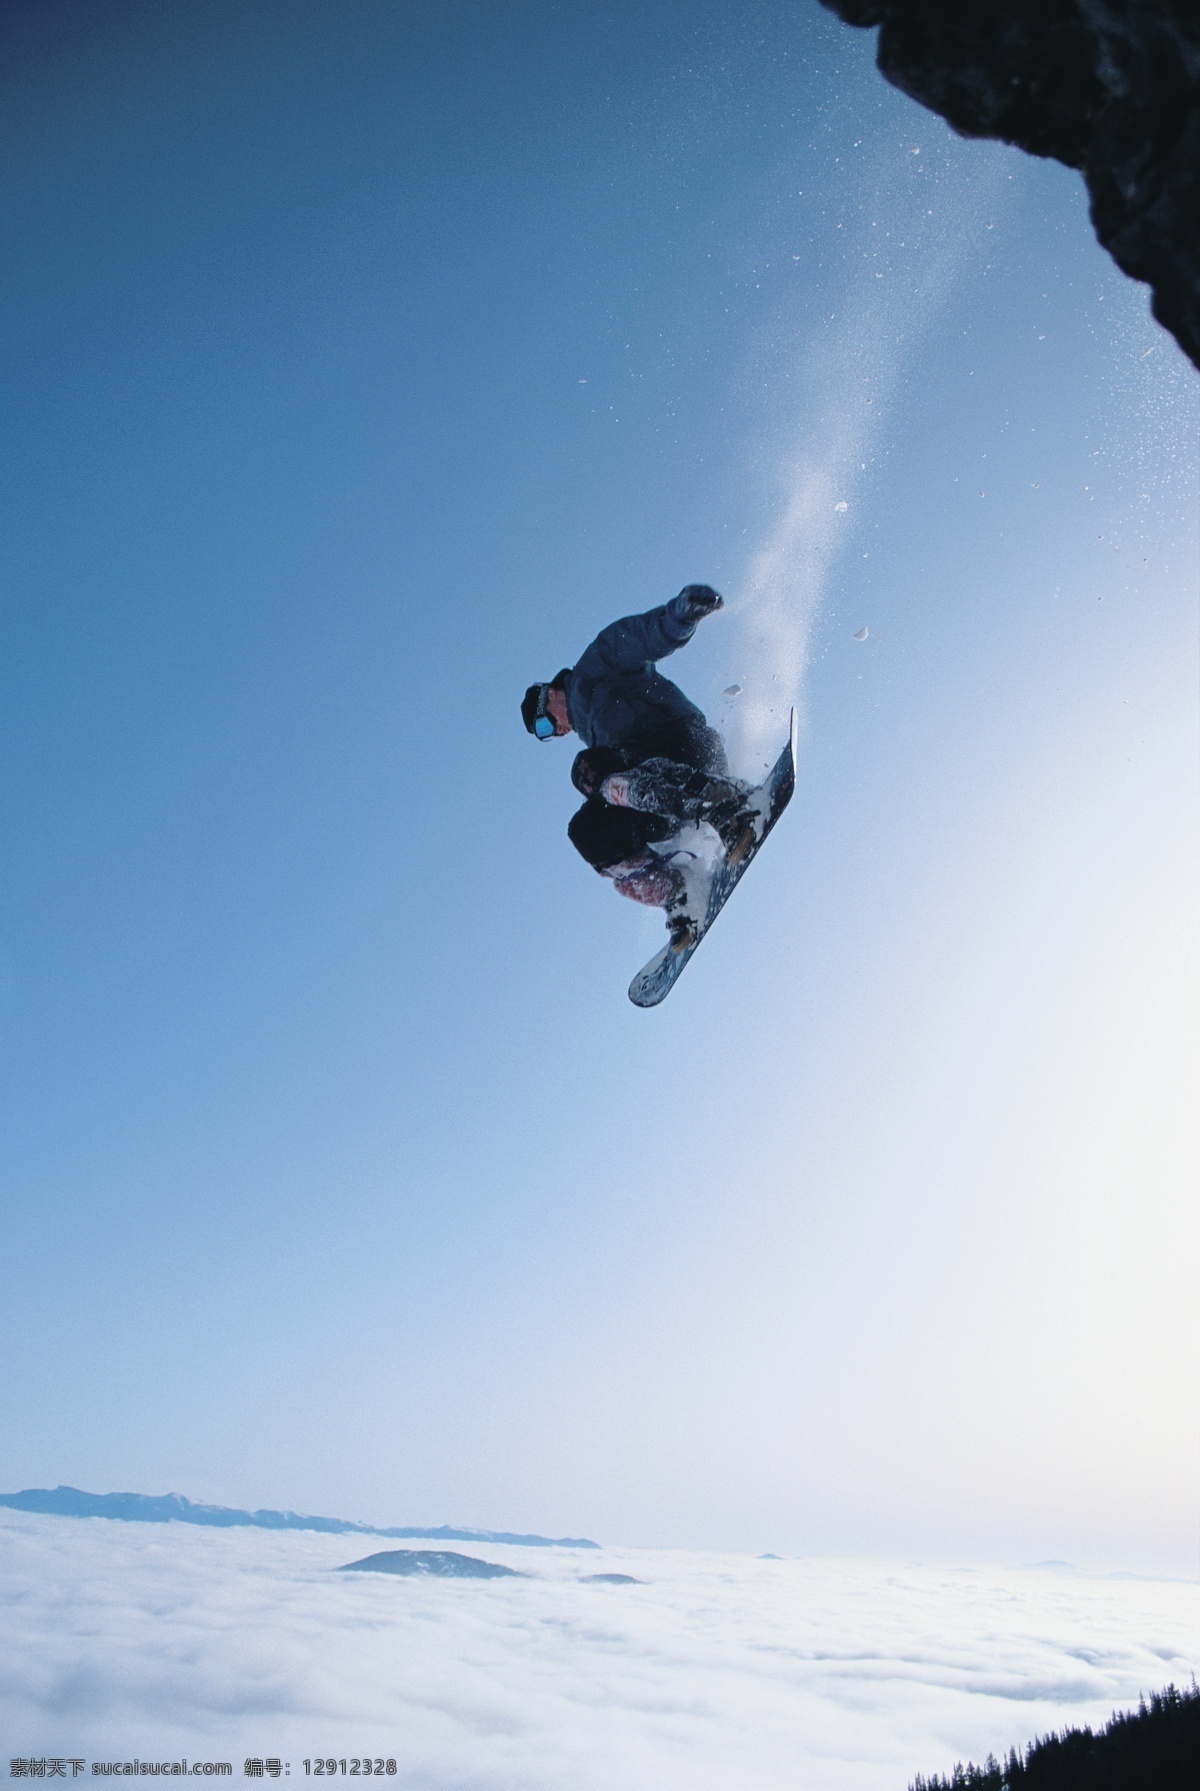 极限 雪上 滑板 运动 雪地运动 划雪运动 极限运动 体育项目 运动员 飞跃 腾空 下滑 速度 运动图片 生活百科 雪山 风景 摄影图片 高清图片 体育运动 白色